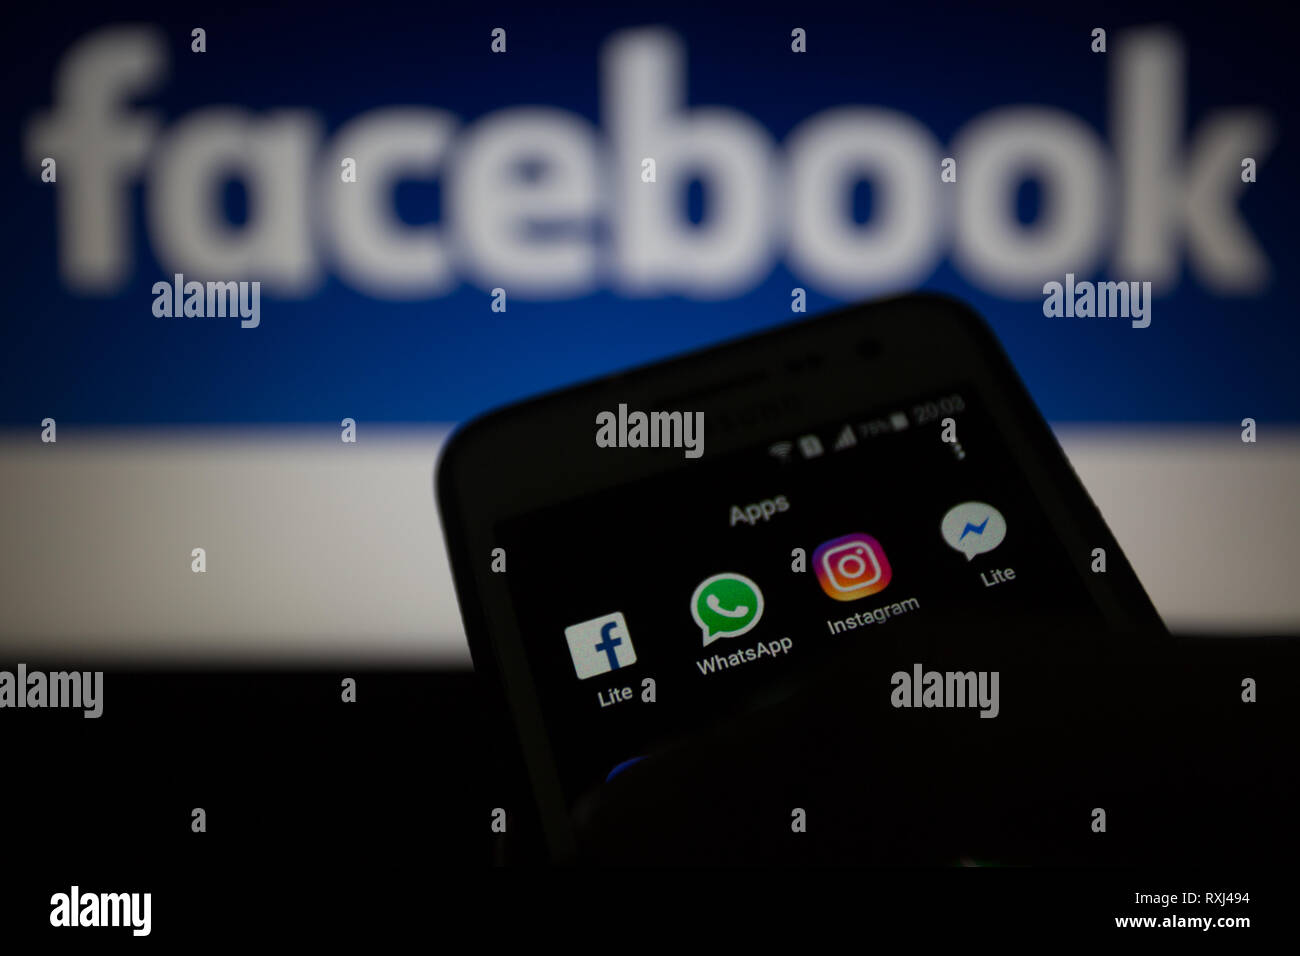 Facebook Lite, WhatsApp, Instagram e Messenger Lite icone, loghi sono mostrati sul display dello smartphone. Facebook prevede di integrare i suoi servizi di messaggistica Foto Stock